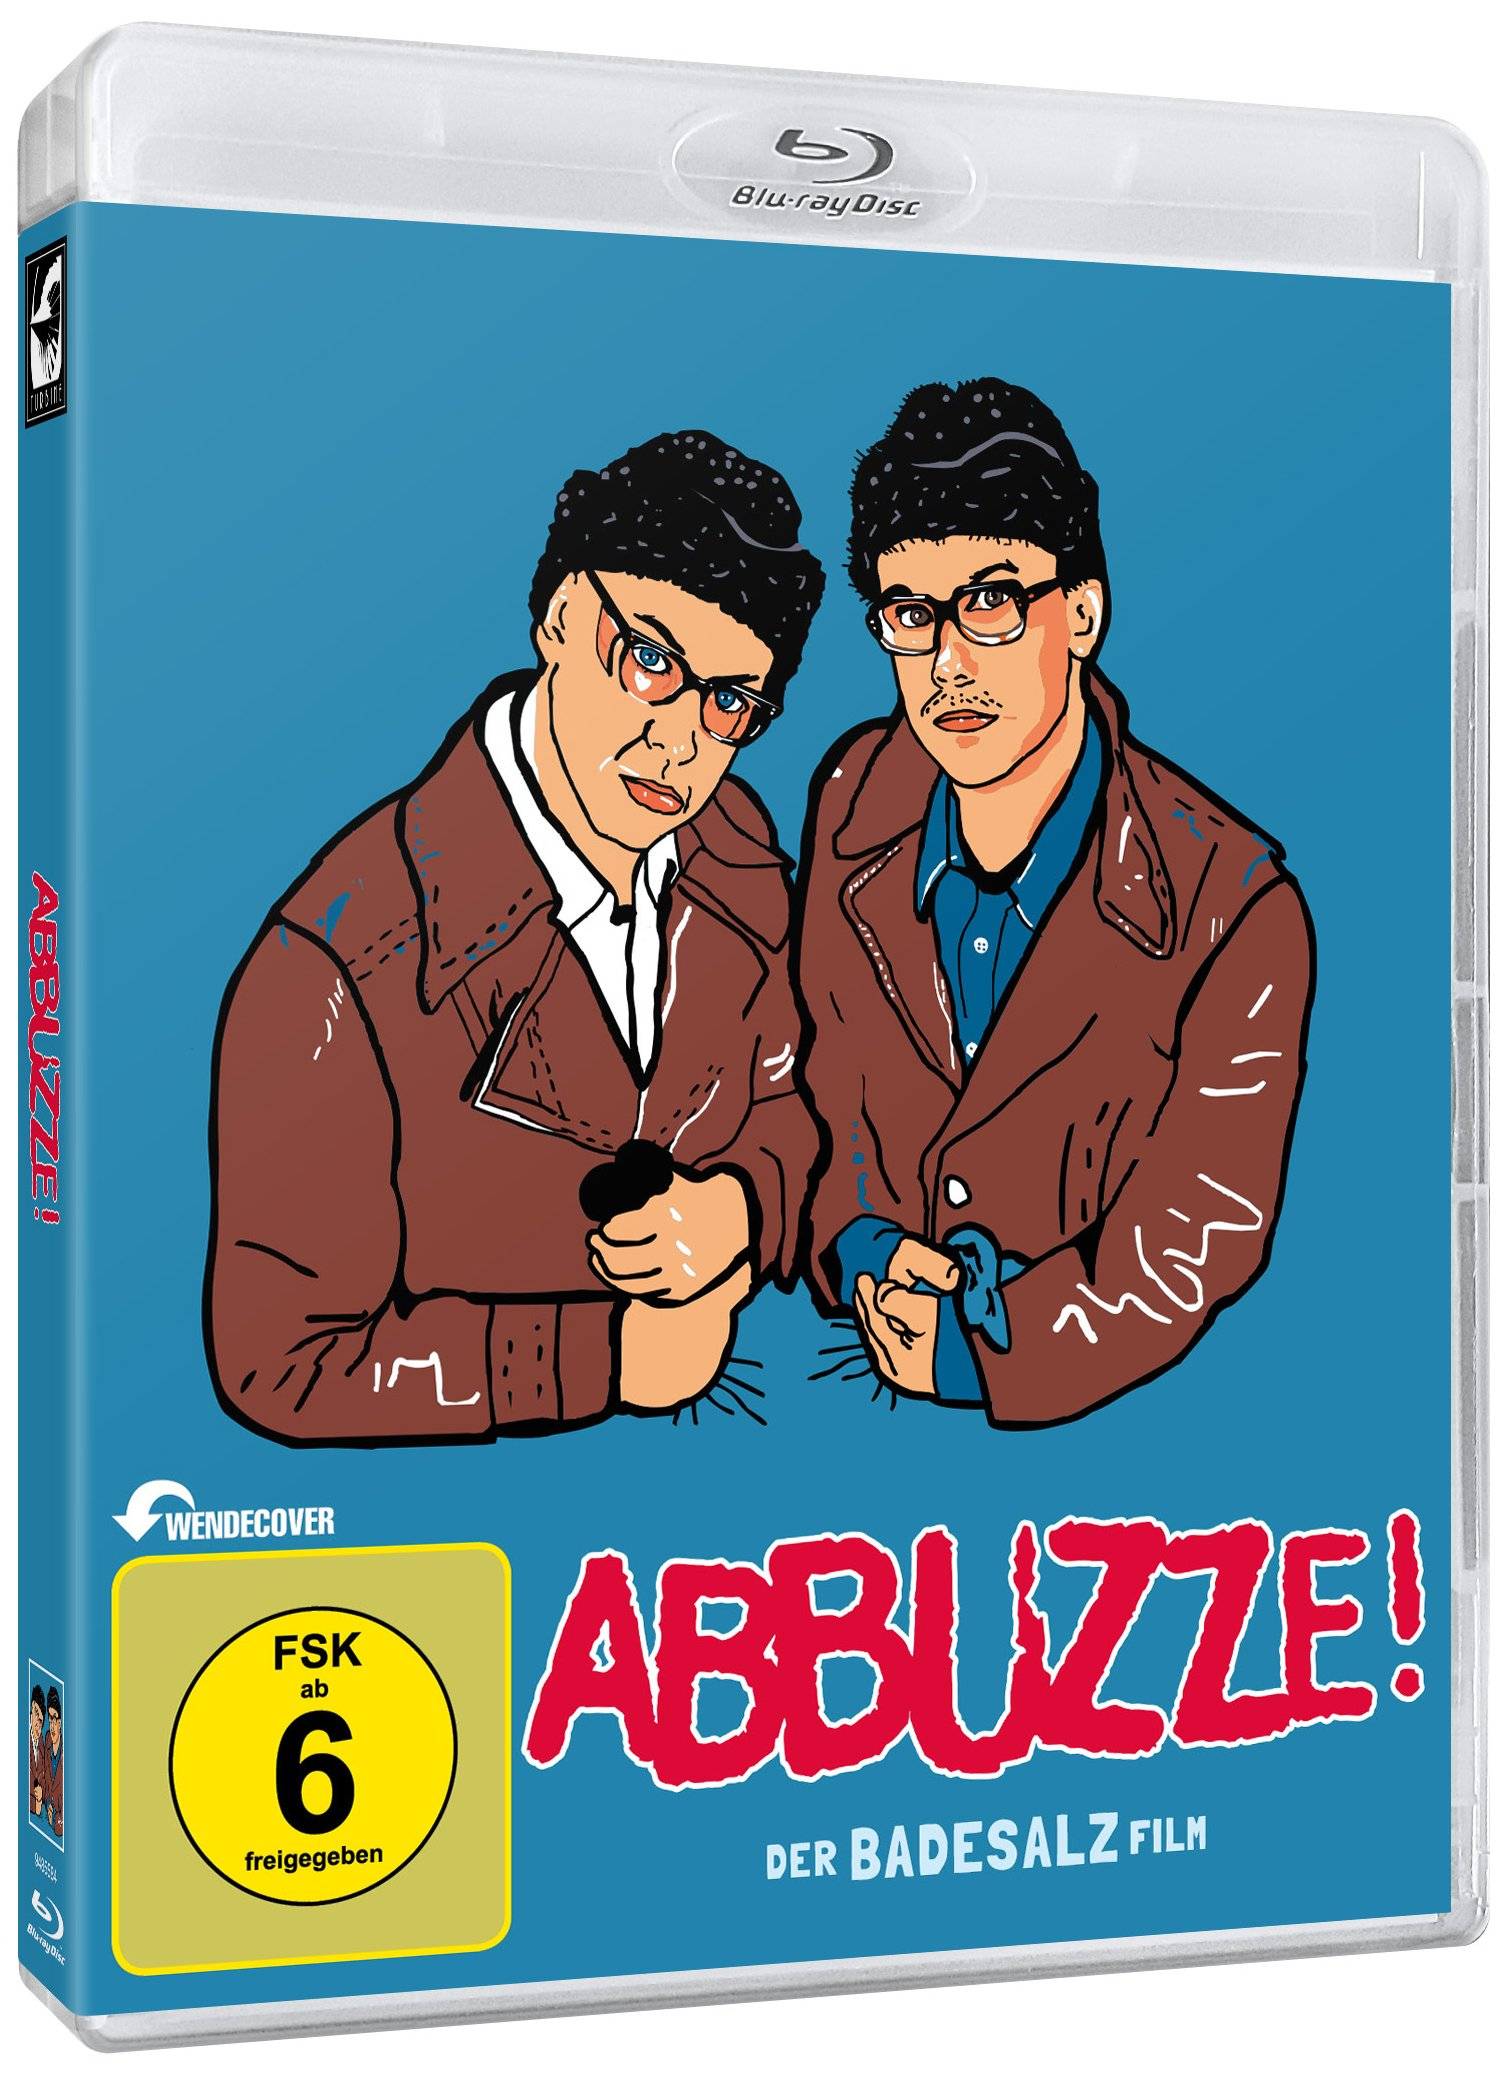 Abbuzze! Der Badesalz Film - Special Edition zum 20. Jubiläum